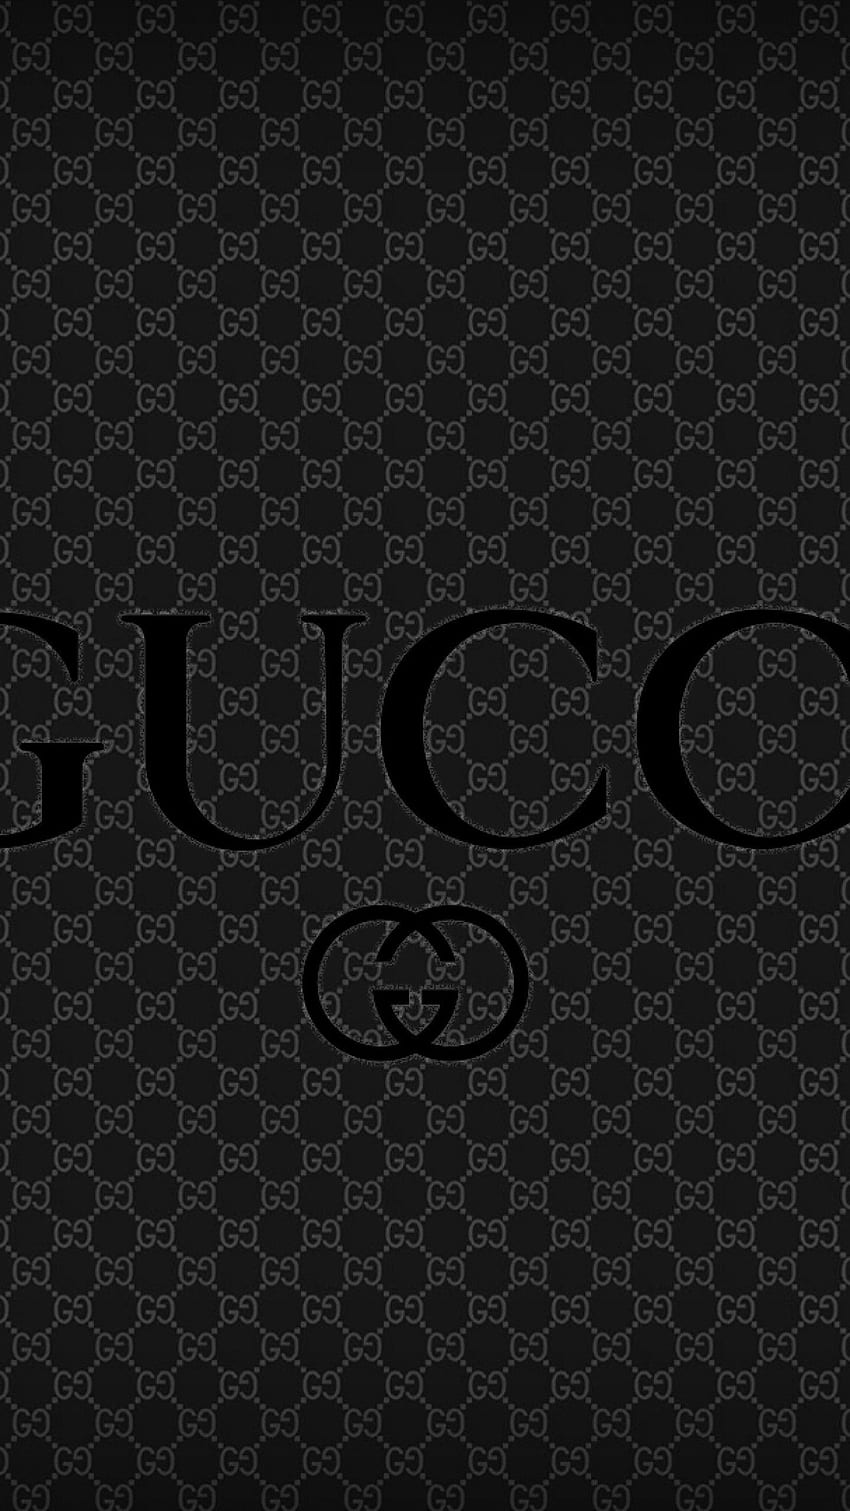 Hình nền Gucci Logo 3D Phone sẽ mang đến cho bạn cảm giác sống động và chân thật như đang mặc một bộ đồ Gucci cao cấp. Hãy tải ngay những hình nền logo Gucci với độ sắc nét và phong cách 3D đặc trưng.